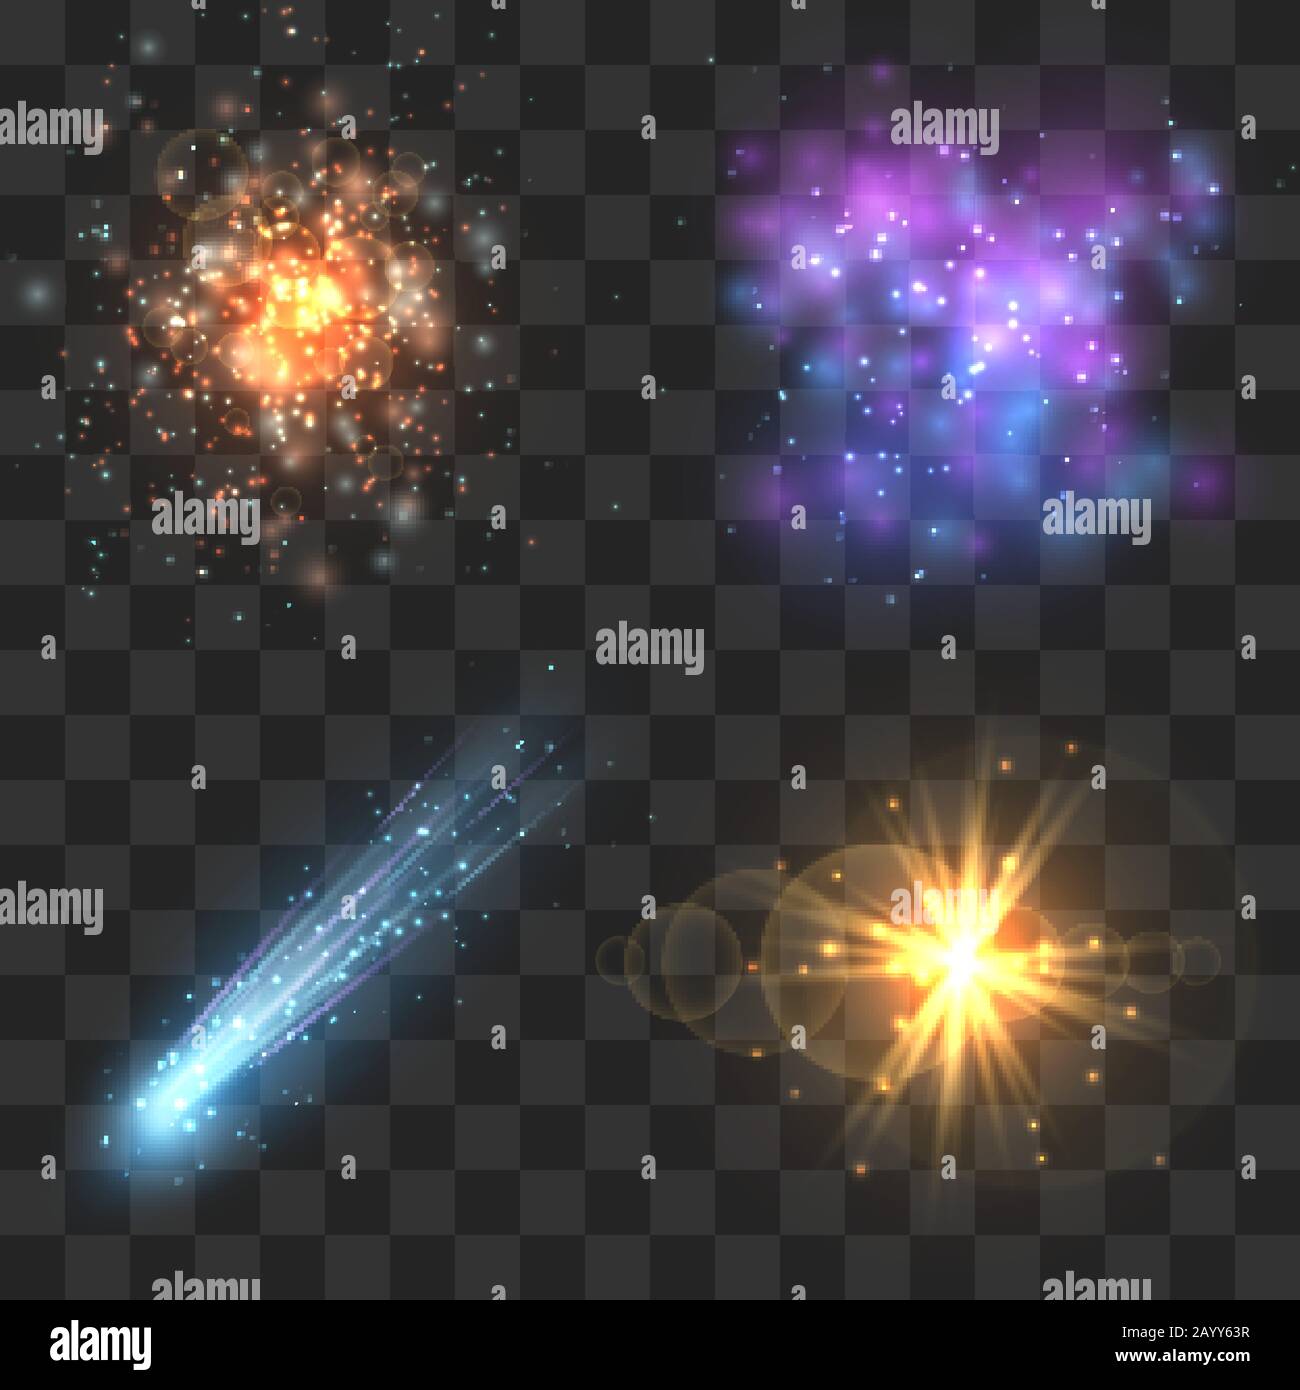 Raumkosmos Objekte, Komet, Meteor, Sterne explodieren auf transparentem kariertem Hintergrund. Universum Explosion oder Fliegenstern, Meteor Licht und Asteroiden im Universum. Vektorgrafiken Stock Vektor